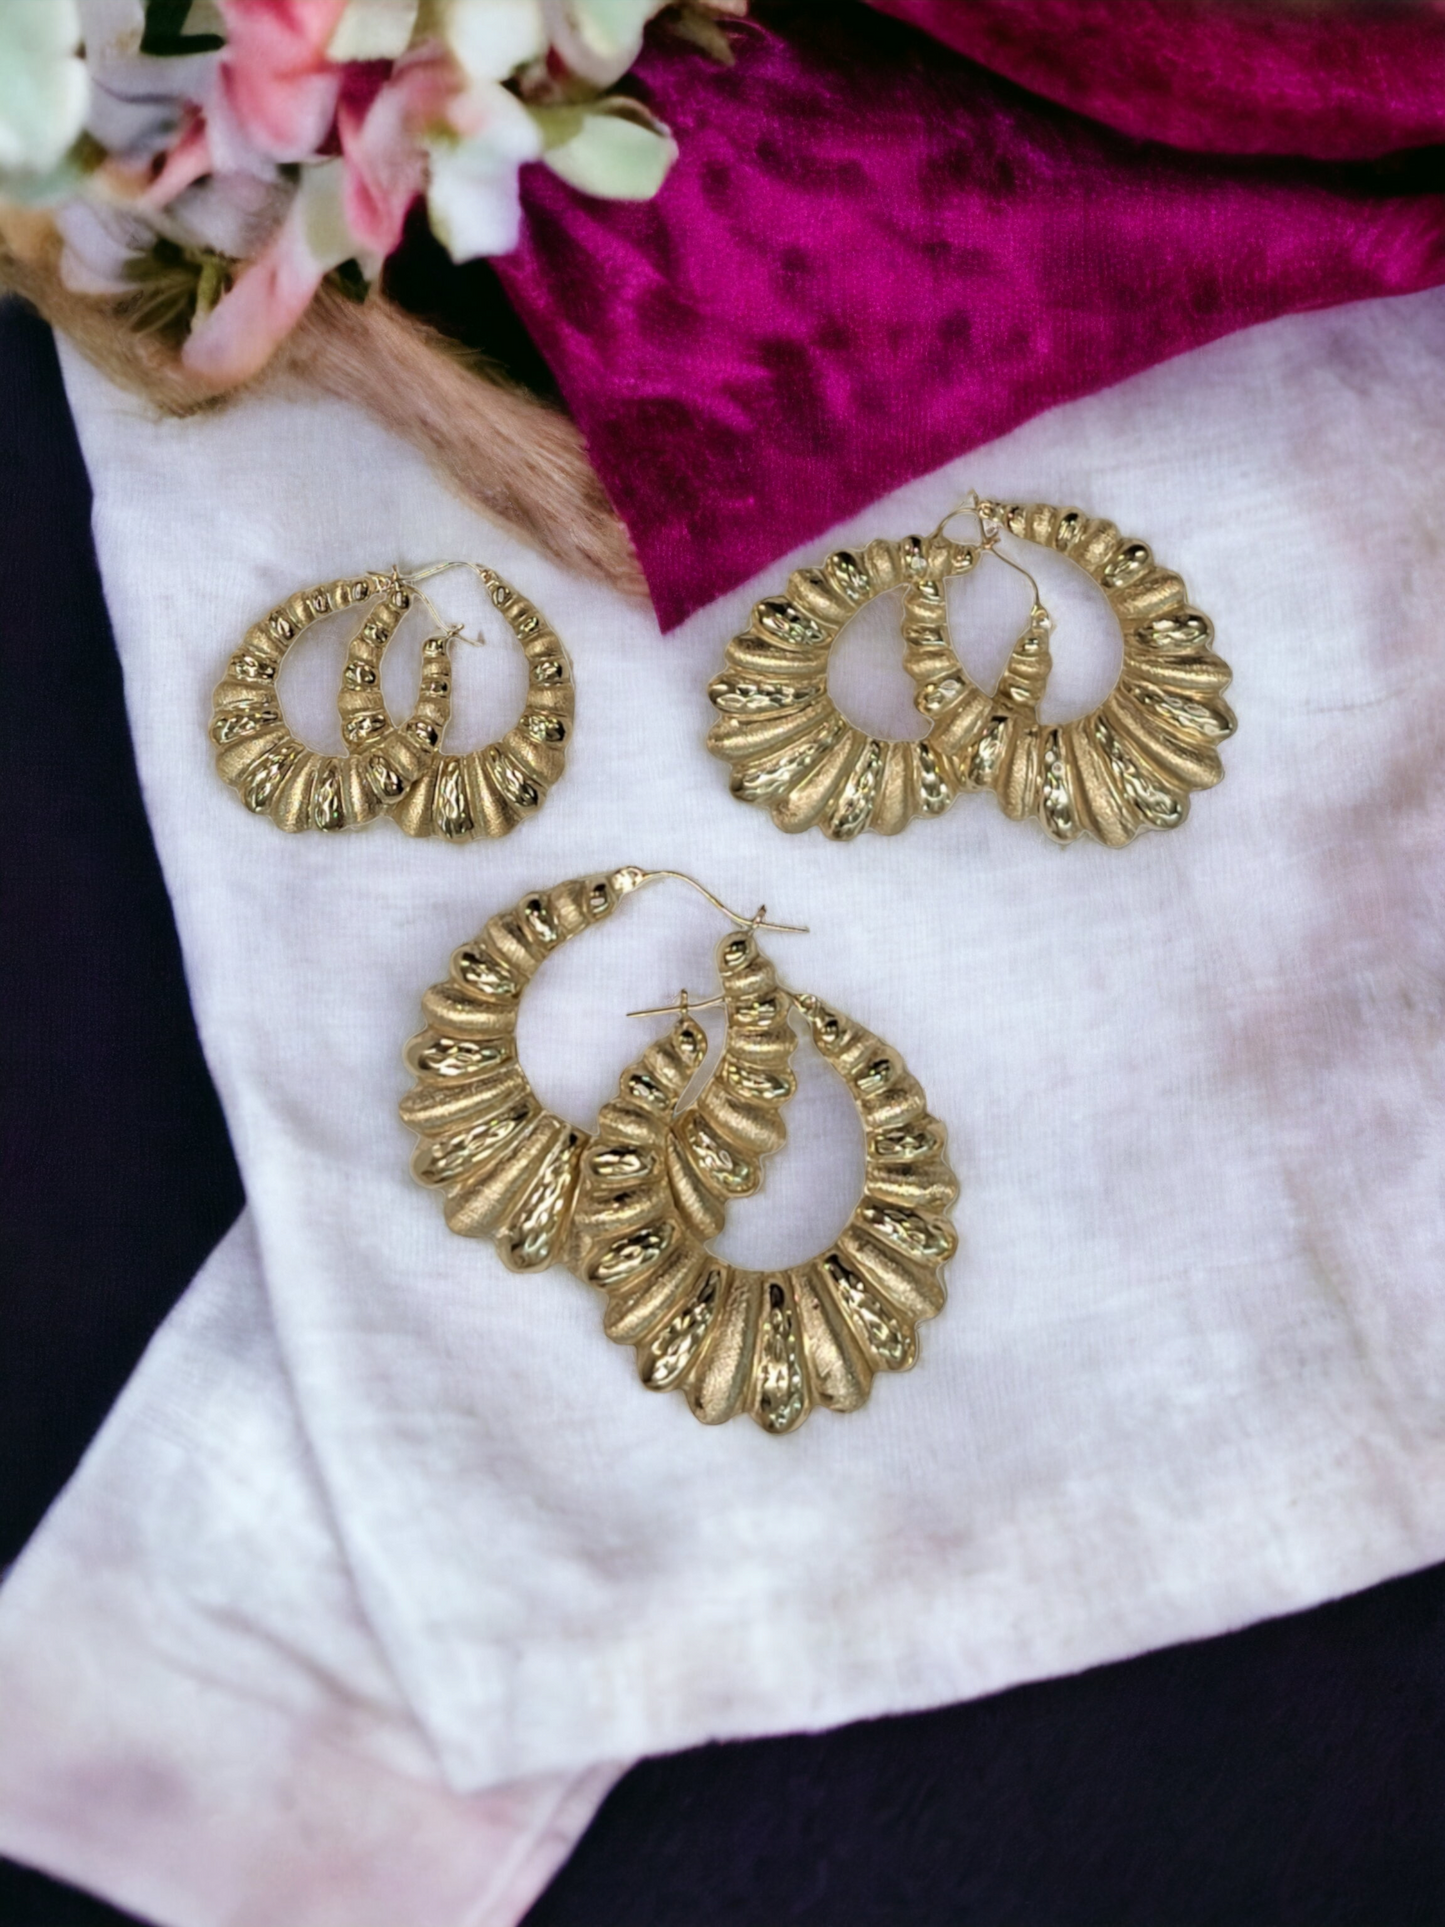 10kt Gold Shrimp Earrings